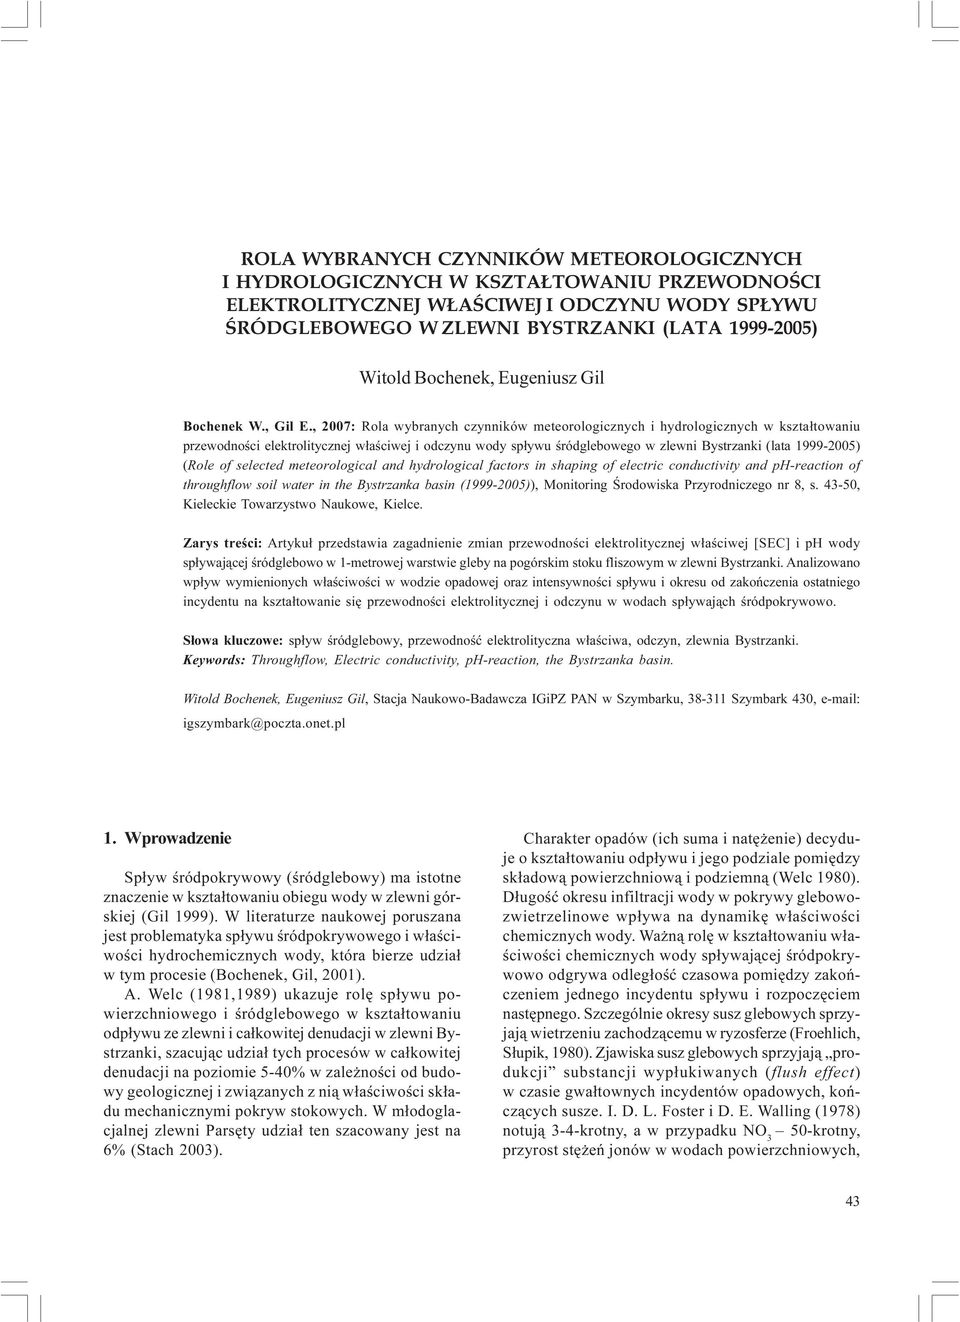 , 2007: Rola wybranych czynników meteorologicznych i hydrologicznych w kszta³towaniu przewodnoœci elektrolitycznej w³aœciwej i odczynu wody sp³ywu œródglebowego w zlewni Bystrzanki (lata 1999-) (Role